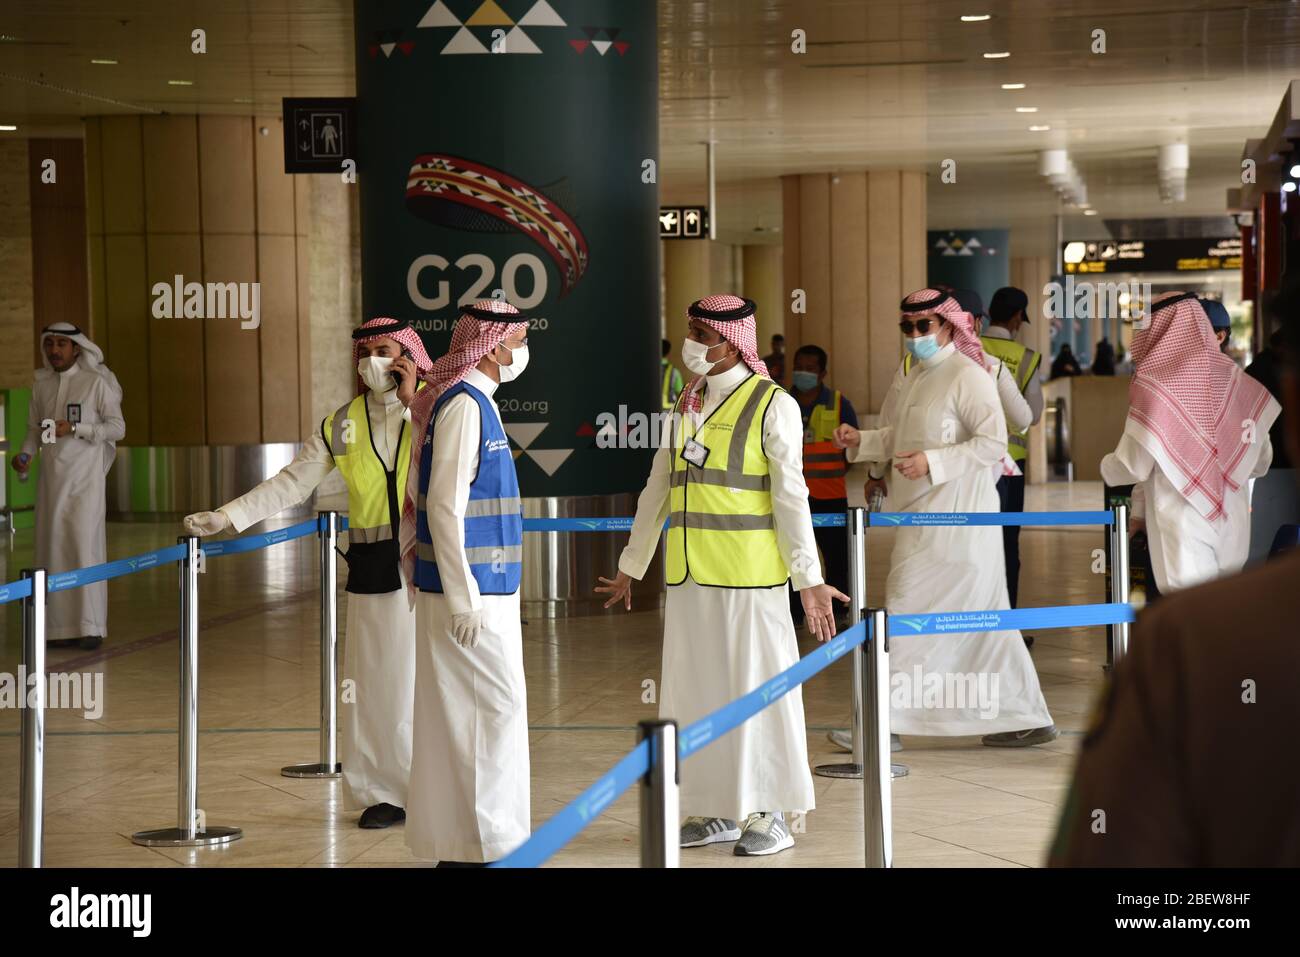 Riad, Saudi-Arabien. April 2020. Mitarbeiter, die Gesichtsmasken tragen, arbeiten am 15. April 2020 am King Khalid International Airport in Riad, Saudi-Arabien. Saudi-Arabien hat am Mittwoch die Registrierung von 493 neuen COVID-19-Fällen angekündigt, womit die Gesamtzahl auf 5,862 Fälle angesetzt wurde. Quelle: Tu Yifan/Xinhua/Alamy Live News Stockfoto